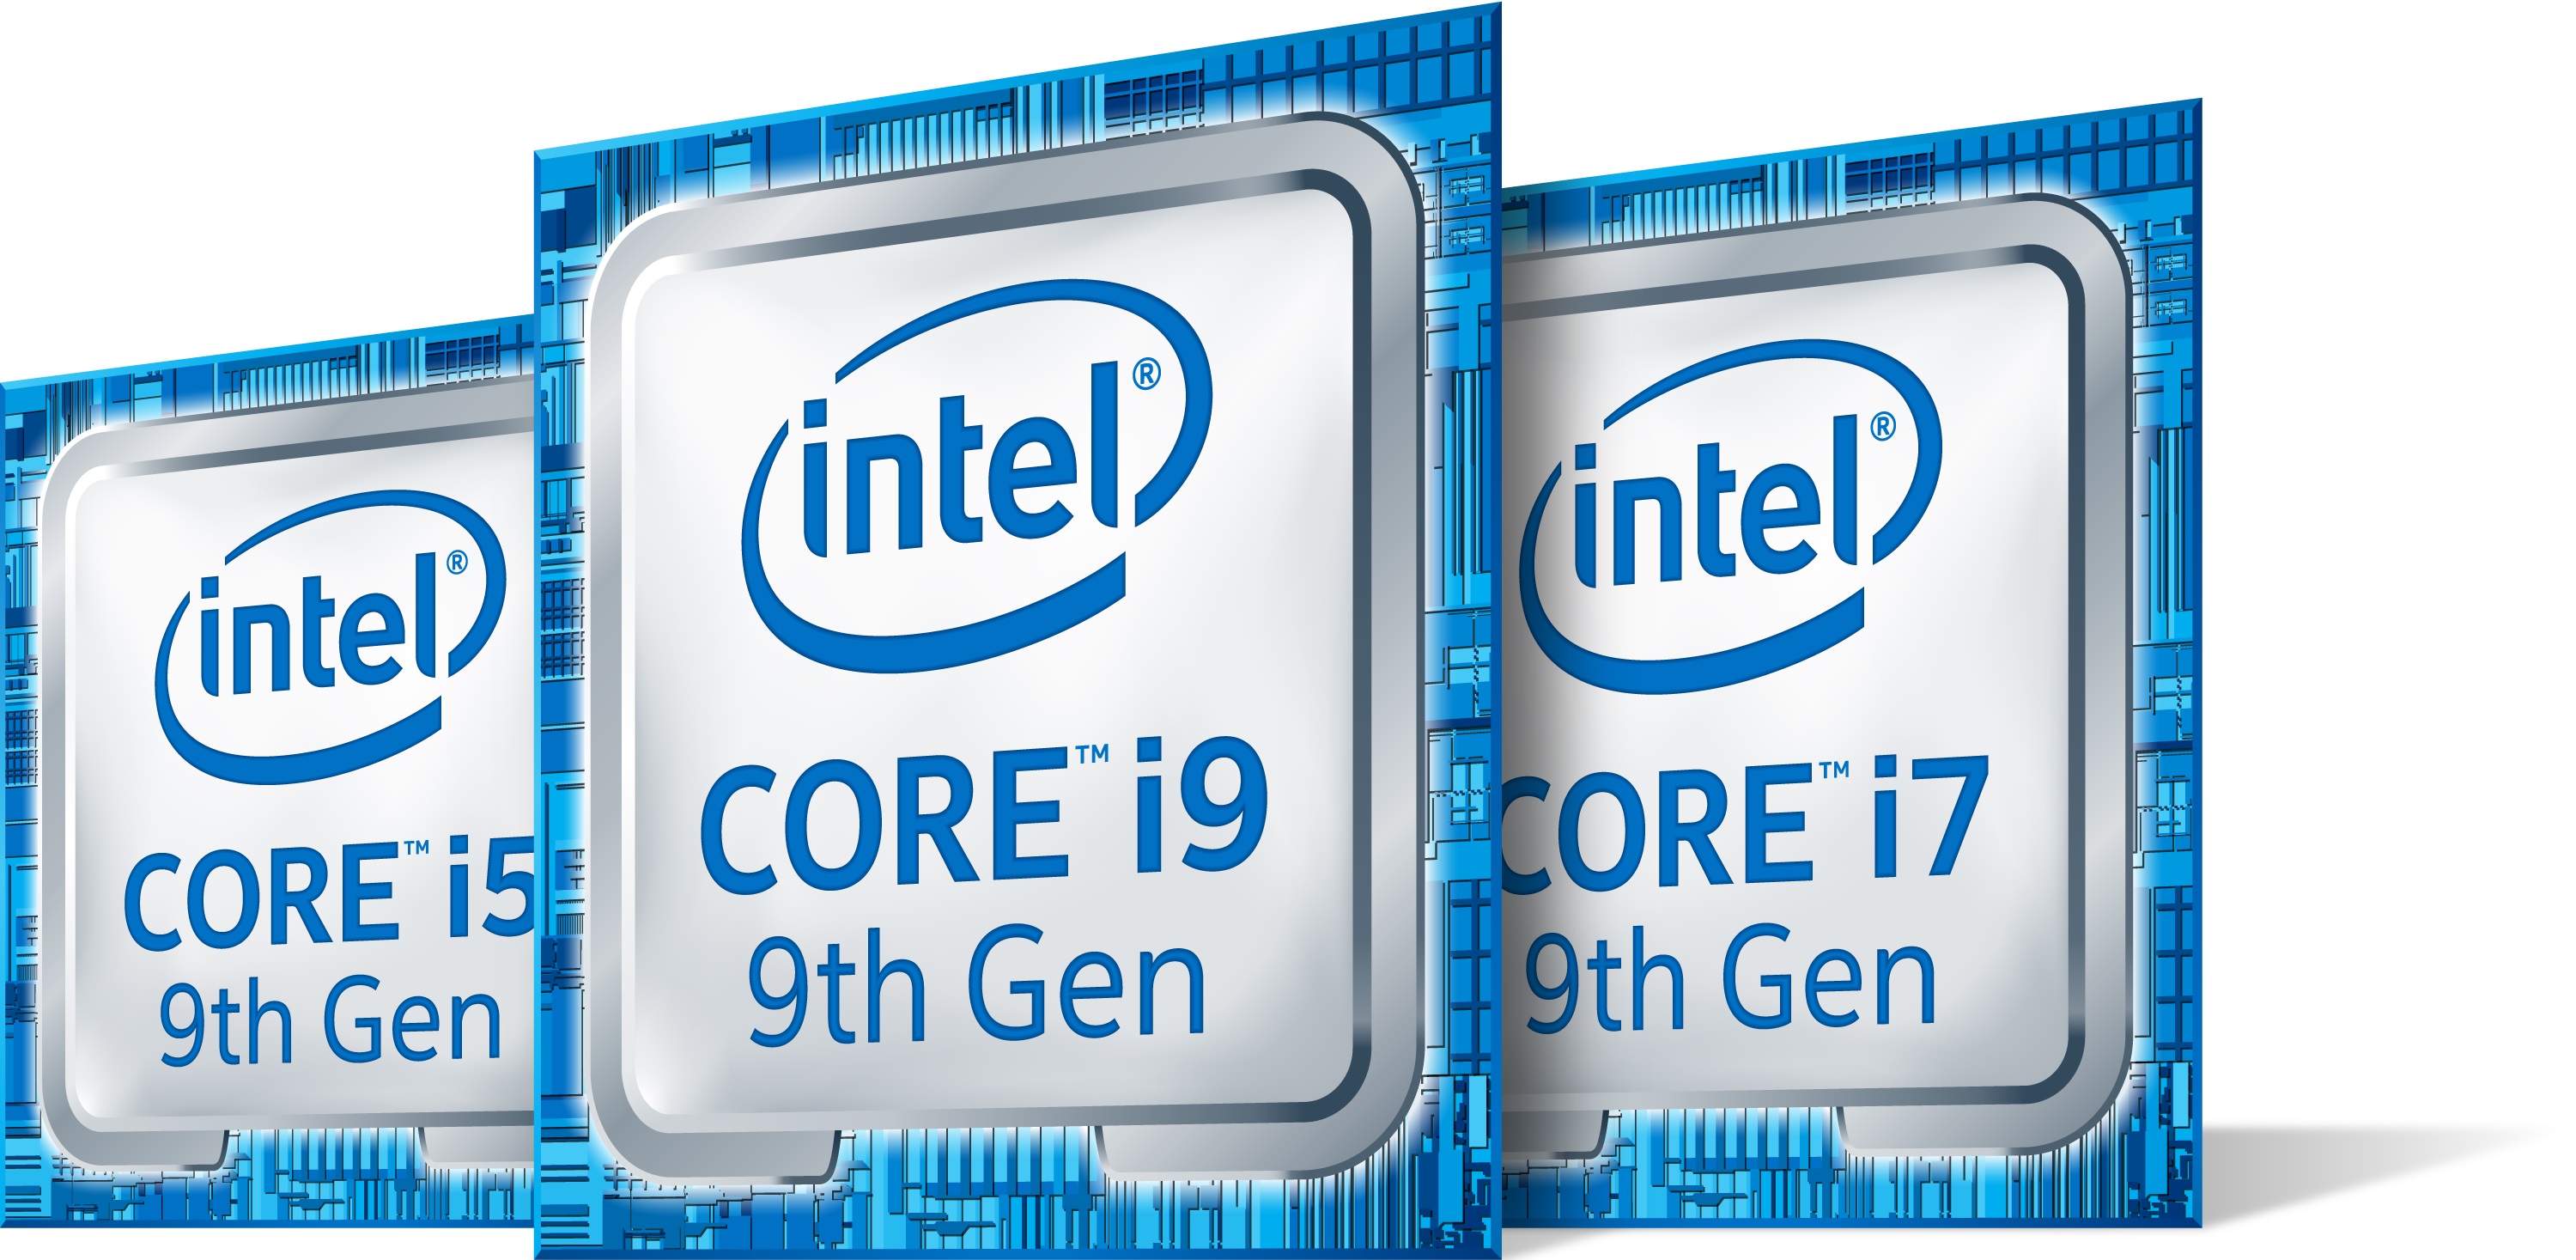 Intel Core I7 9700k Review Bit Tech Net